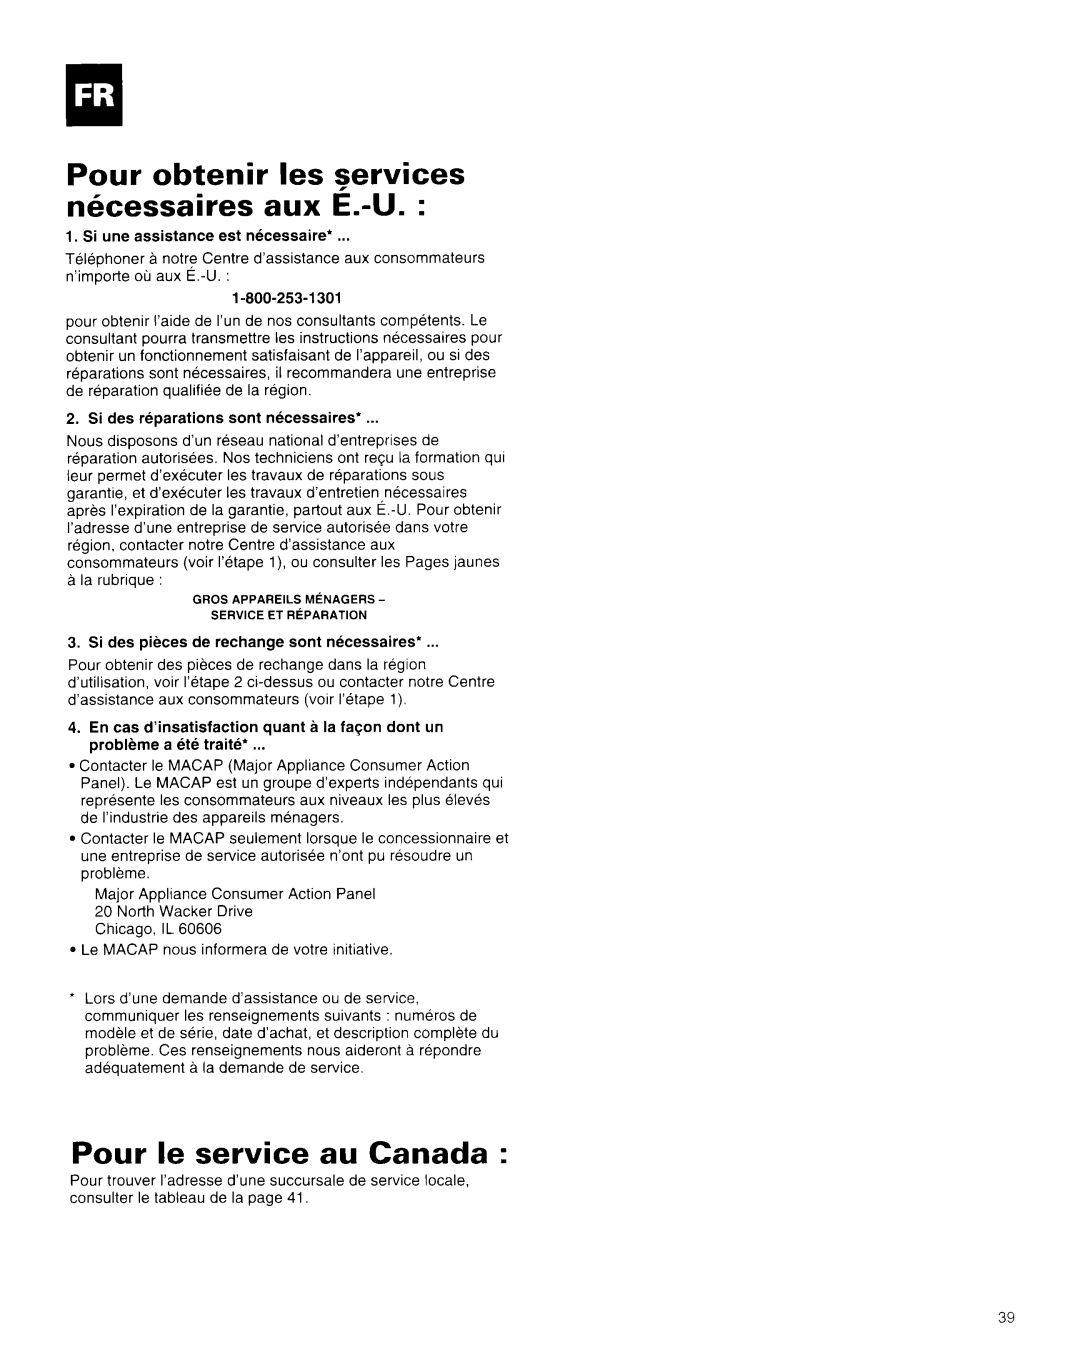 Whirlpool AR1800XA0 manual Pour obtenir les services nkessaires aux E.-U, Pour le service au Canada 